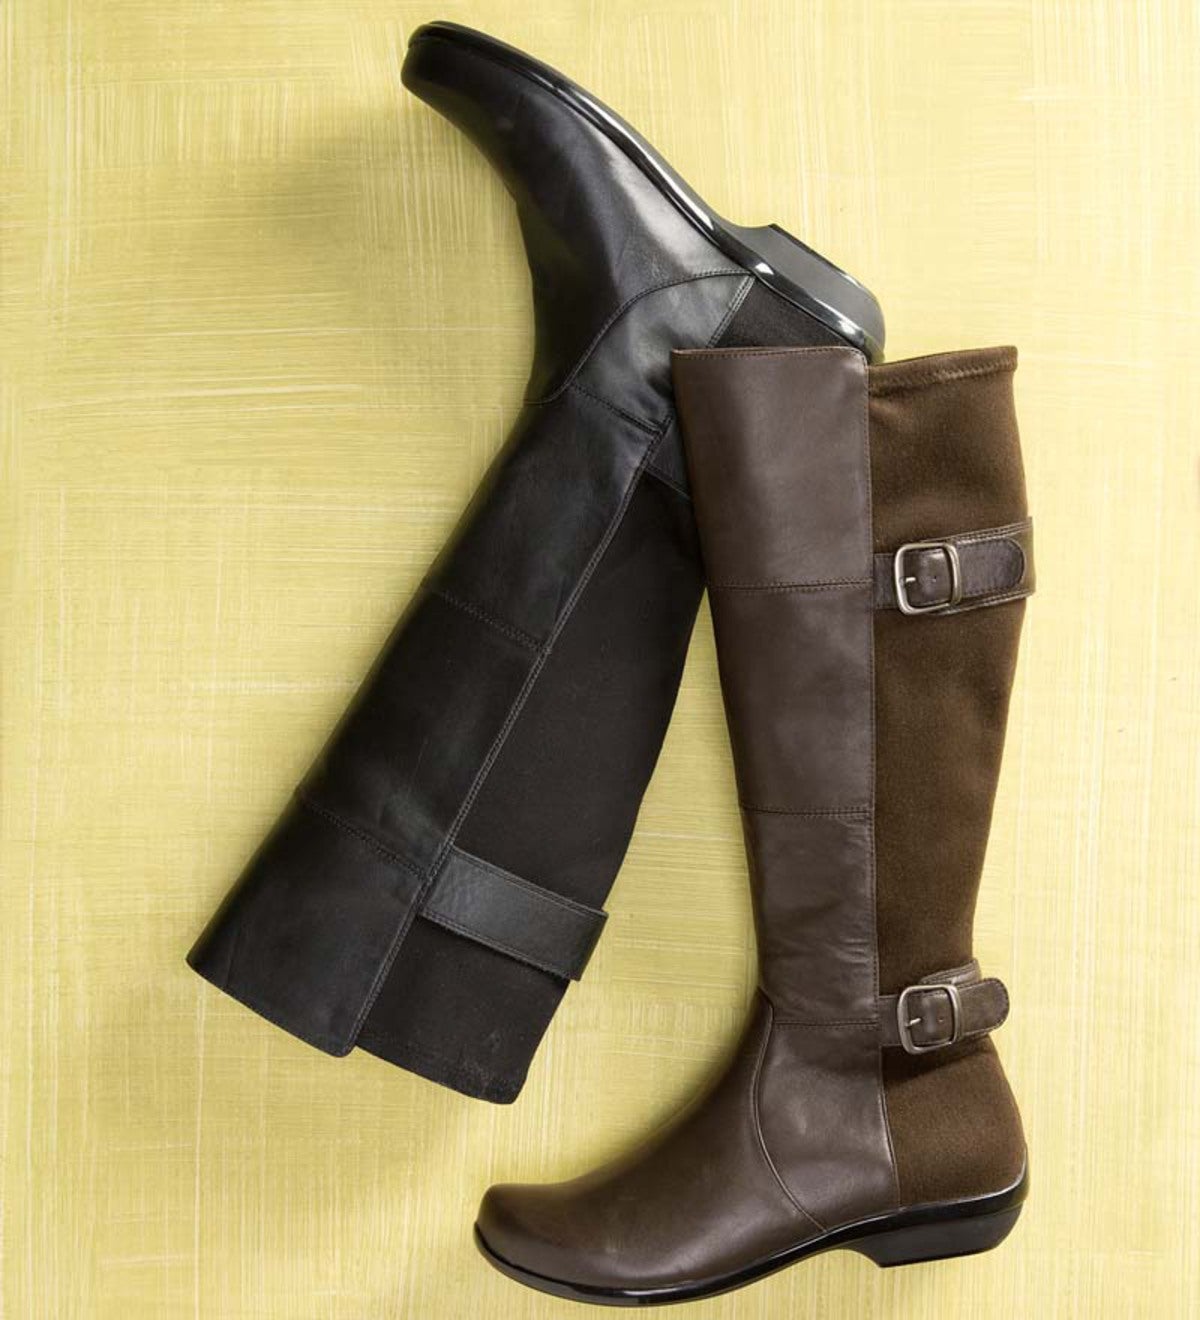 dansko tall boots